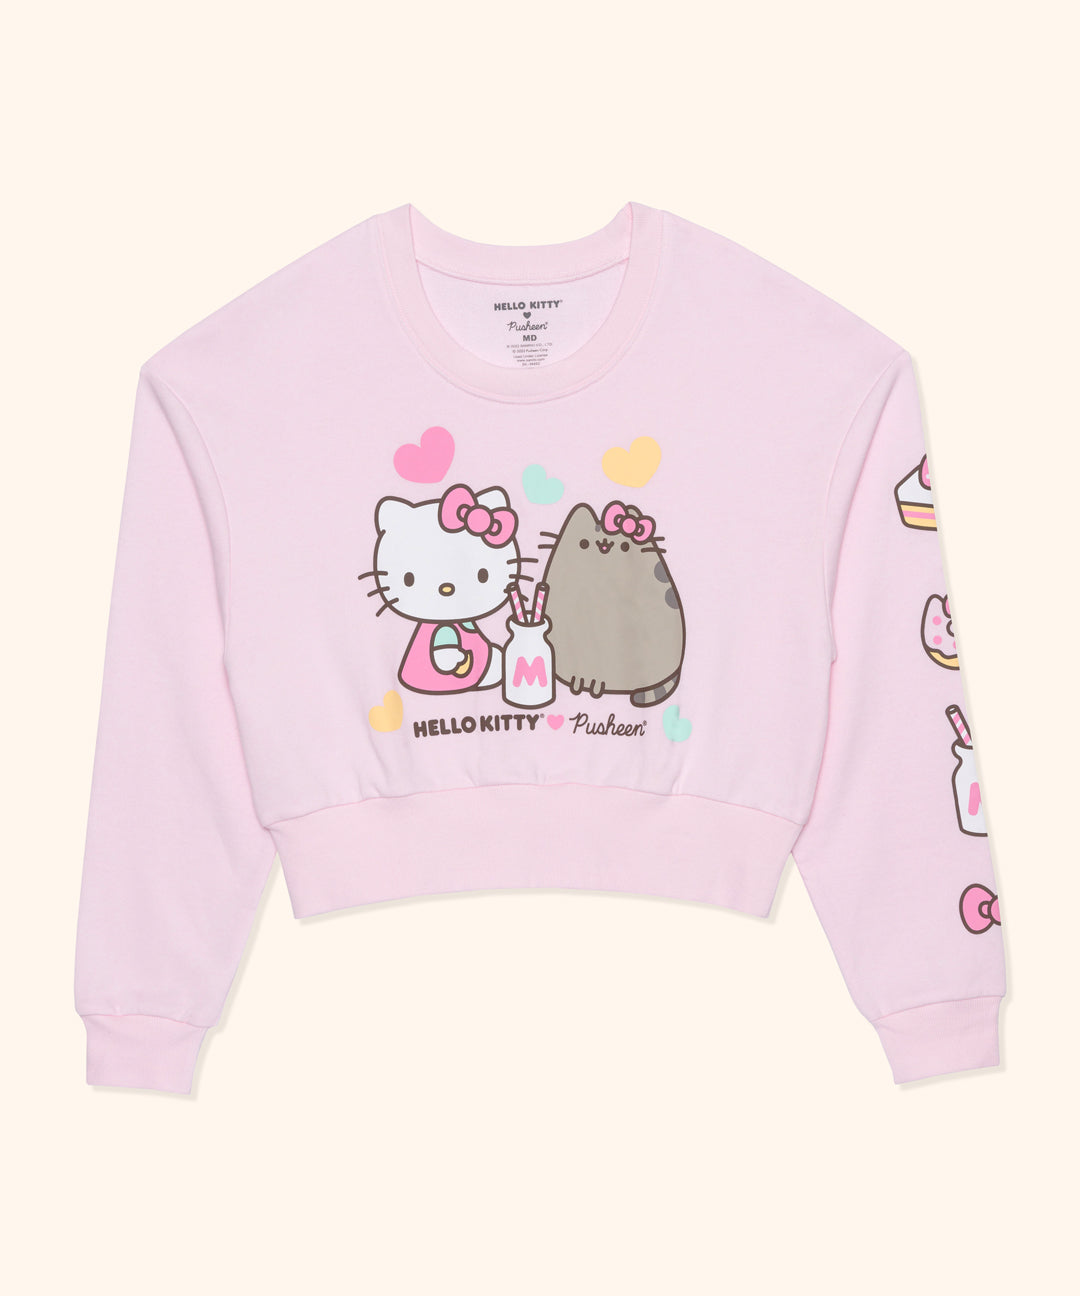 Wind vangst Handvest Hello Kitty® x Pusheen® Ladies Cropped Sweatshirt – Pusheen Shop